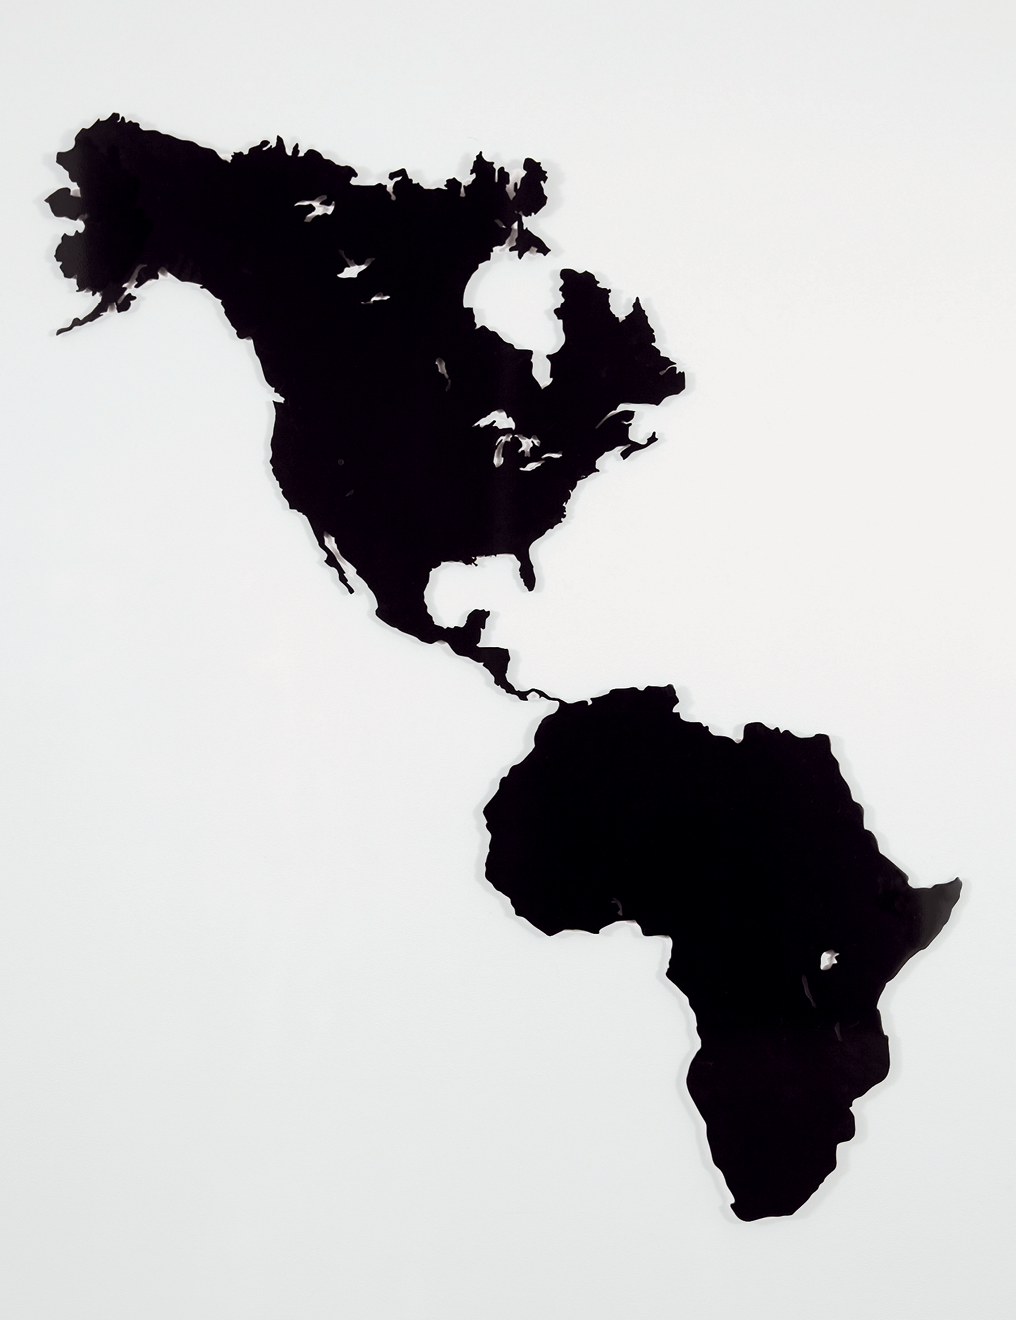 Fotografia. Obra em preto e branco. Sobre um fundo branco, em preto, um mapa com os territórios da América do Norte e Central, conectados com o continente africano (em lugar do que habitualmente seria a América do Sul).